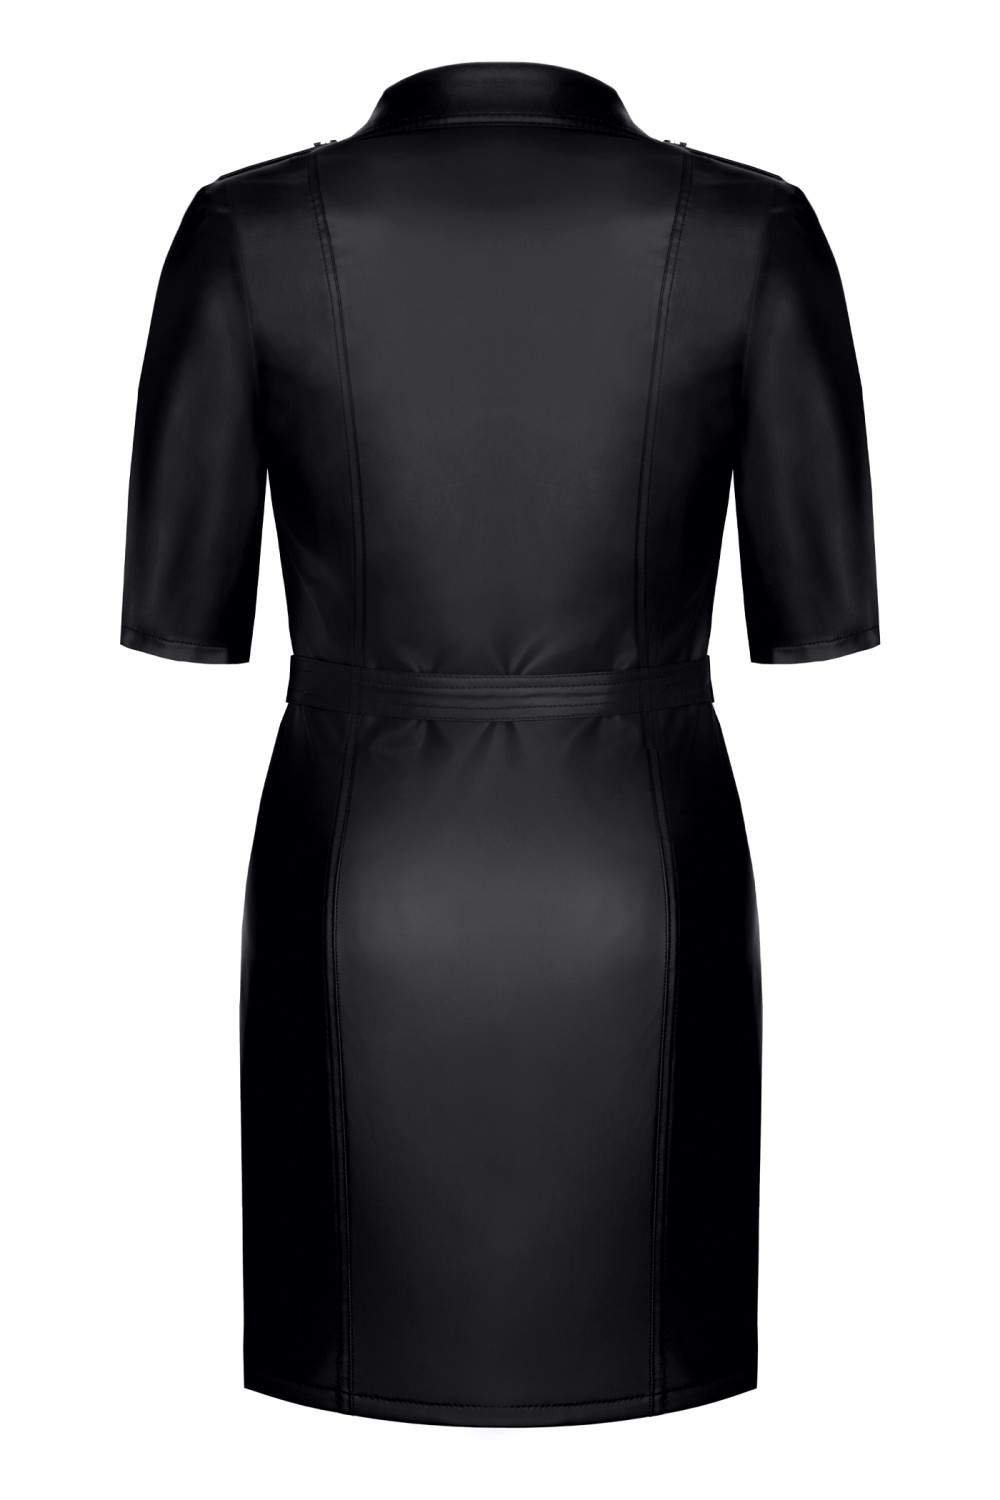 Jednoczęściowa czarna sukienka w stylu mundurowym Demoniq Liese